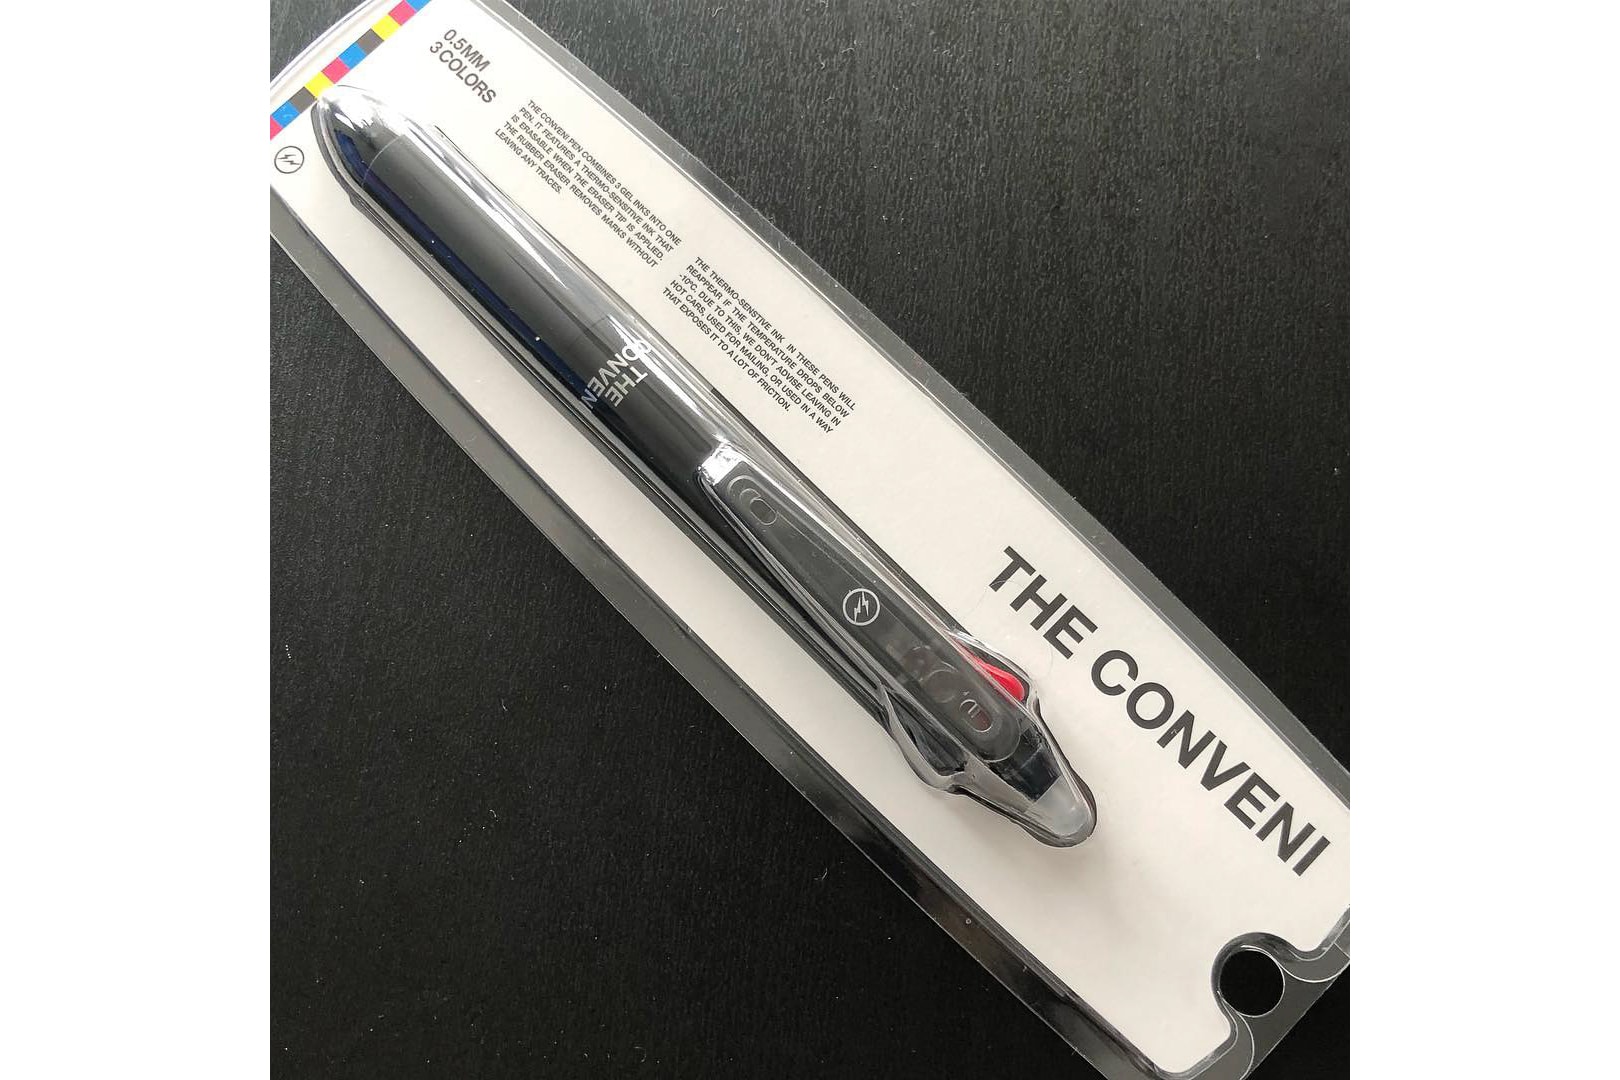 藤原ヒロシが THE CONVENI の3色ボールペンをセルフリーク  細さは0.5mm、クリップ部分には〈fragment design〉のロゴをセット 『THE CONVENI』のオープンを目前に控え、最終調整で忙しない毎日を過ごしている藤原ヒロシが、同コンセプトストアで販売すると思われる商品をInstagramで初公開した。その投稿に写り込んでいるのは、コンビニのステーショナリーエリアで必ず販売されている3色ボールペン。ケースを見るにボールペンの細さは0.5mmで、ボディの中央には『THE CONVENI』のロゴ、クリップ部分には〈fragment design（フラグメント デザイン）〉のサンダーロゴが配置されている。  しかし、これが実際に店頭/オンラインで販売されるものなのか、ポイントで交換できるノベルティなのかは現状不明。オープンまでは引き続き、@fujiwarahiroshiの動向をいつも以上に注視していく必要がありそうだ。  あわせて、公式サイト『theconveni.com』で解禁された『THE CONVENI』の新情報もお見逃しなく。